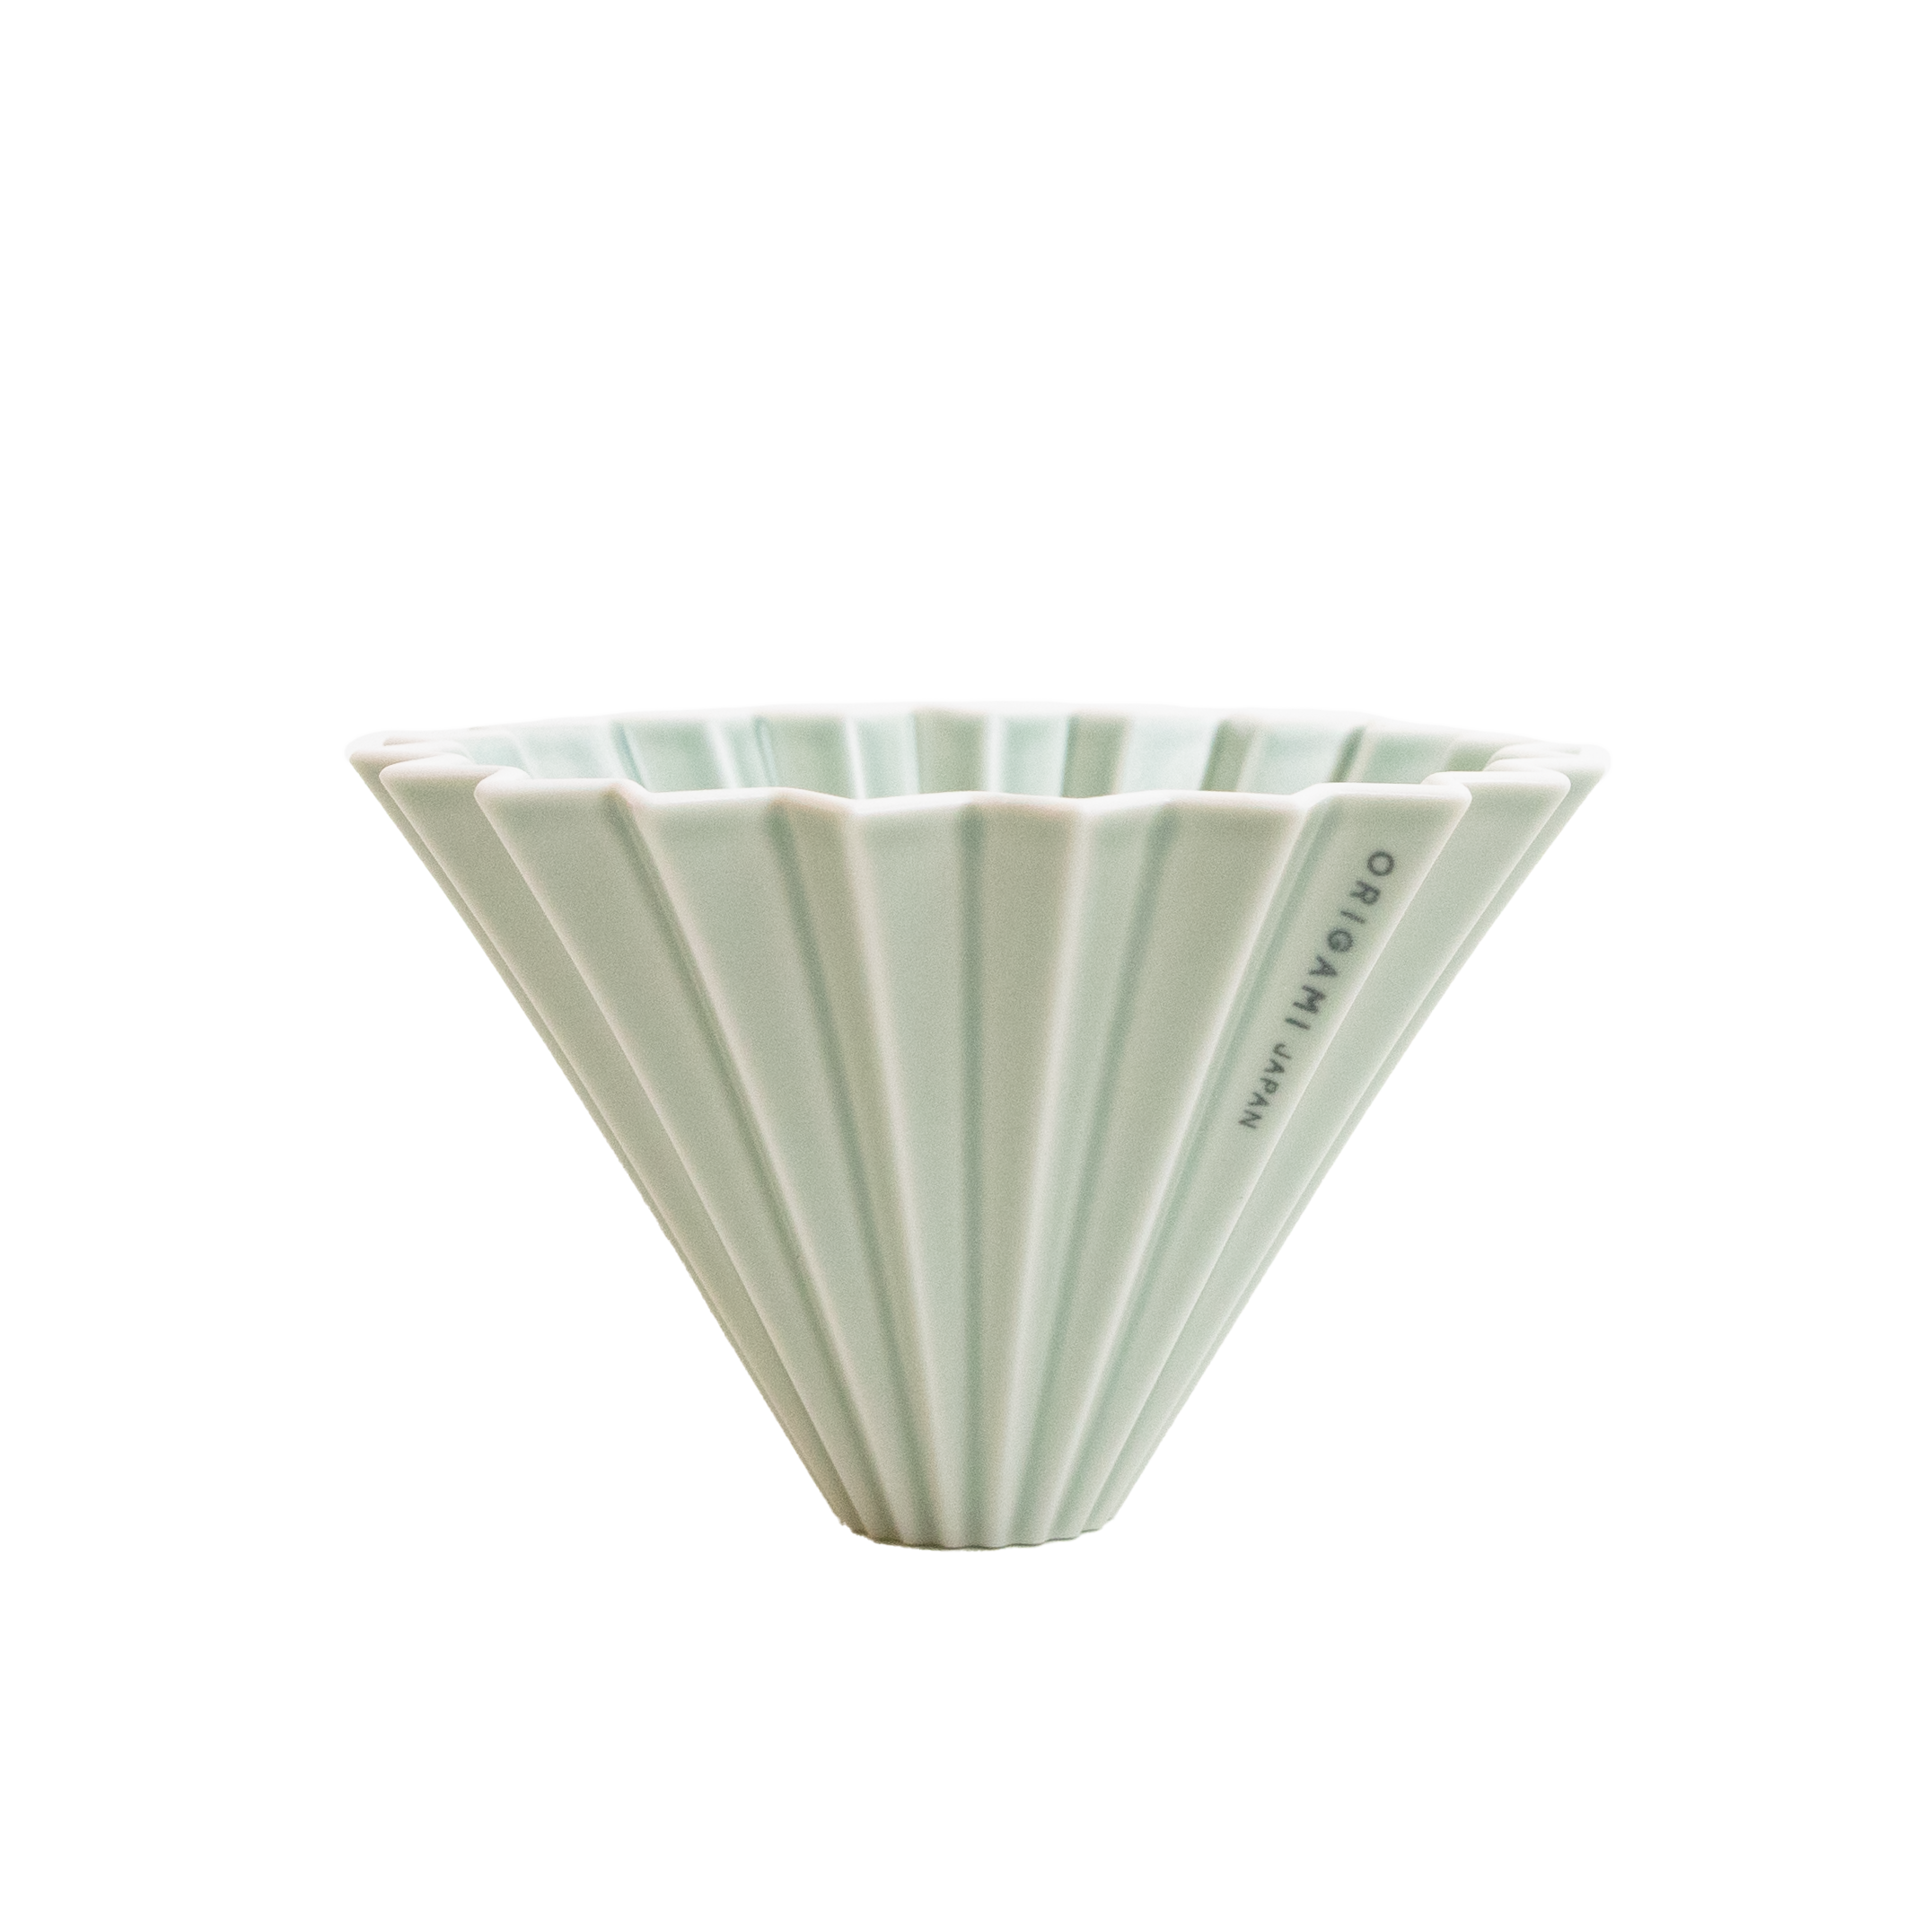 Origami Dripper - Ceramic